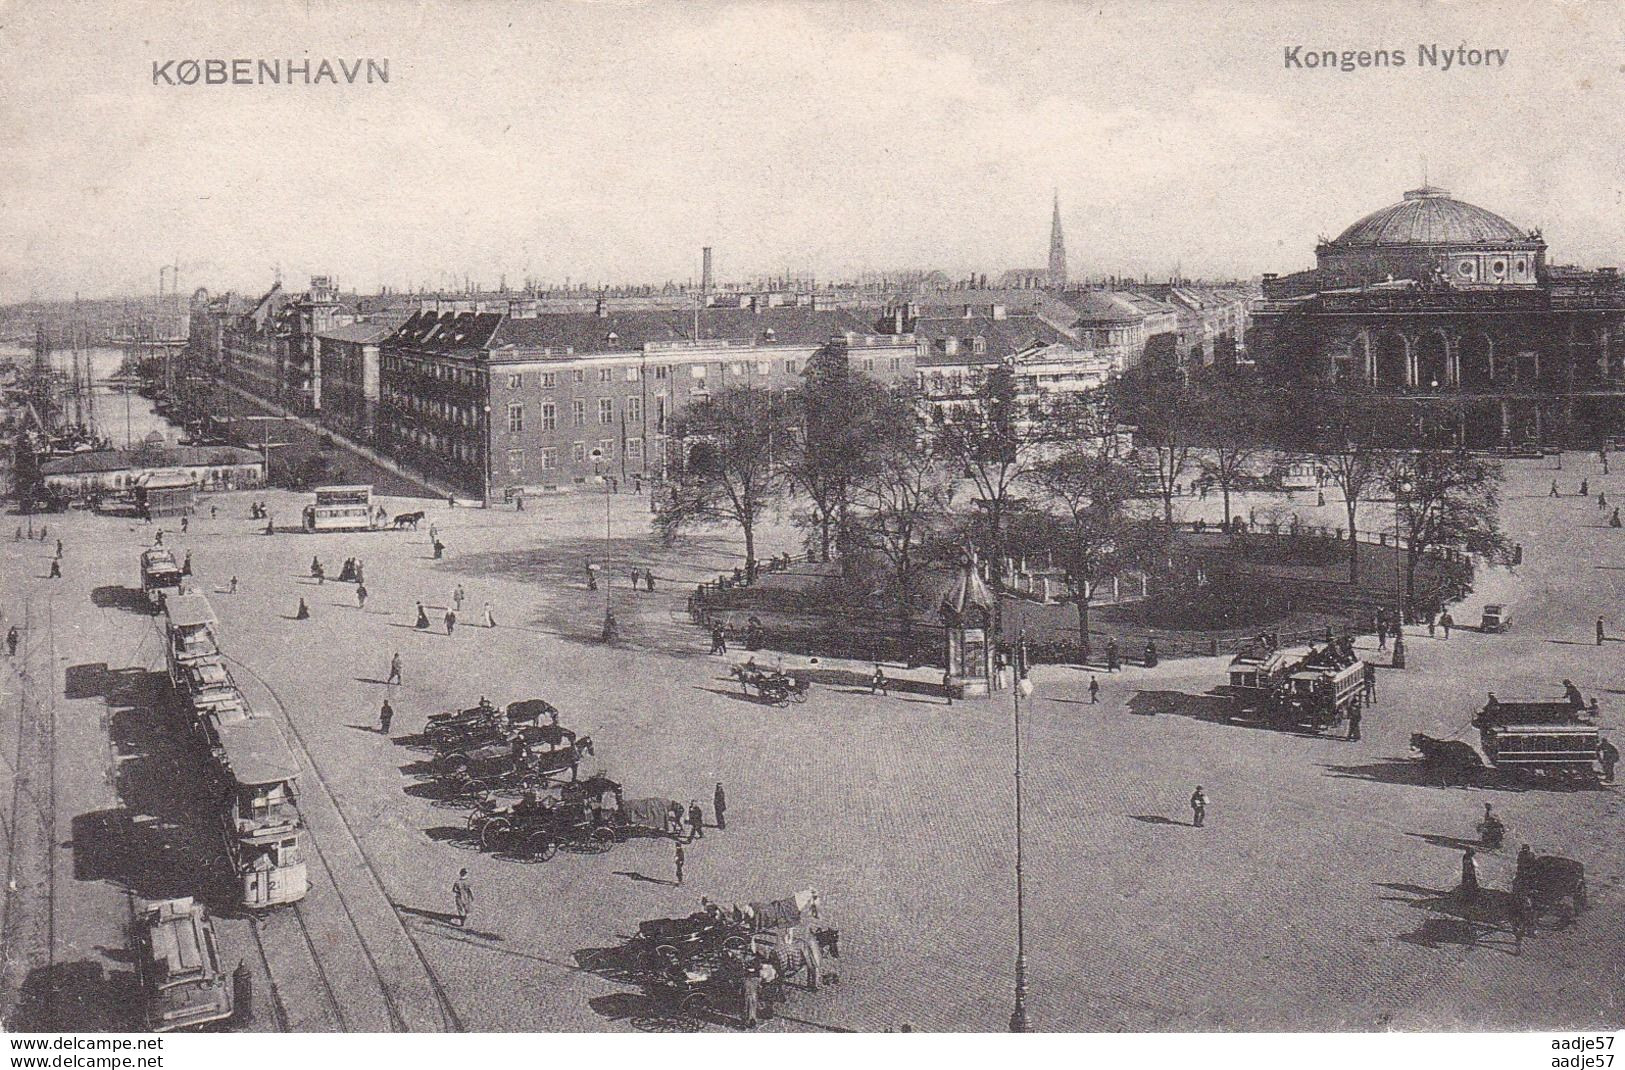 Kopenhagen Tram Kongens Nyforv - Tram